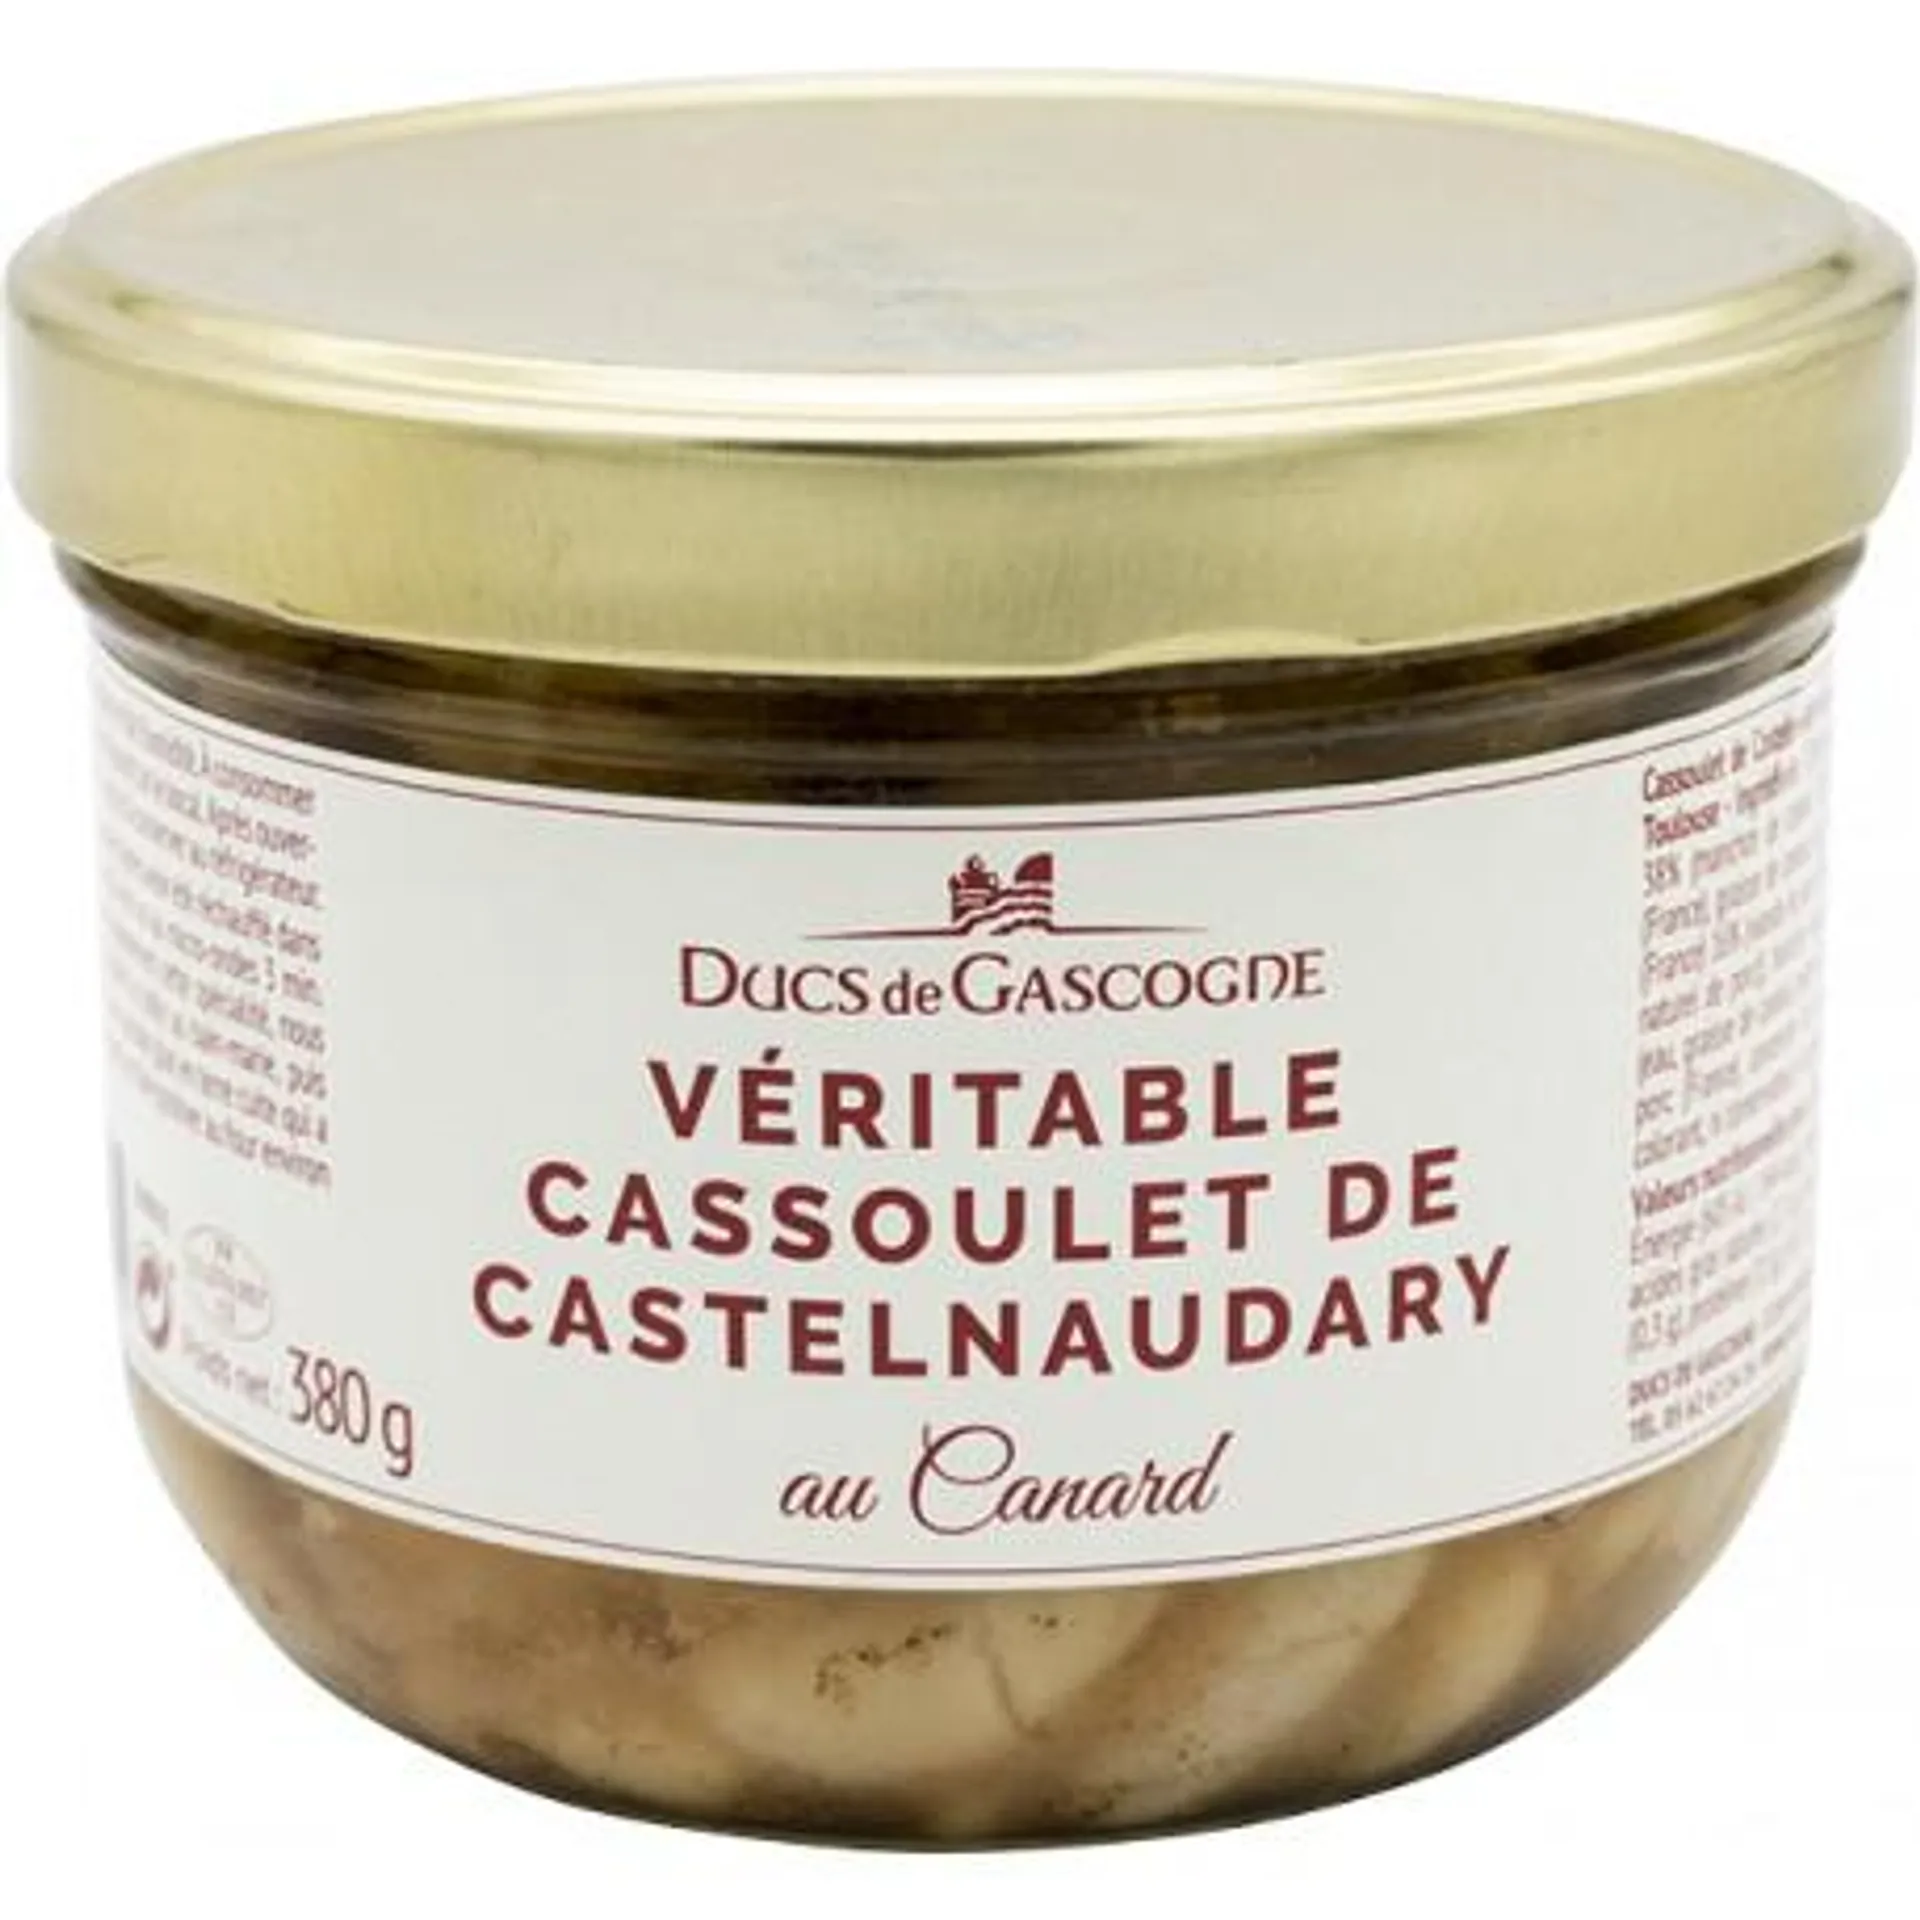 Véritable Cassoulet de Castelnaudary au canard